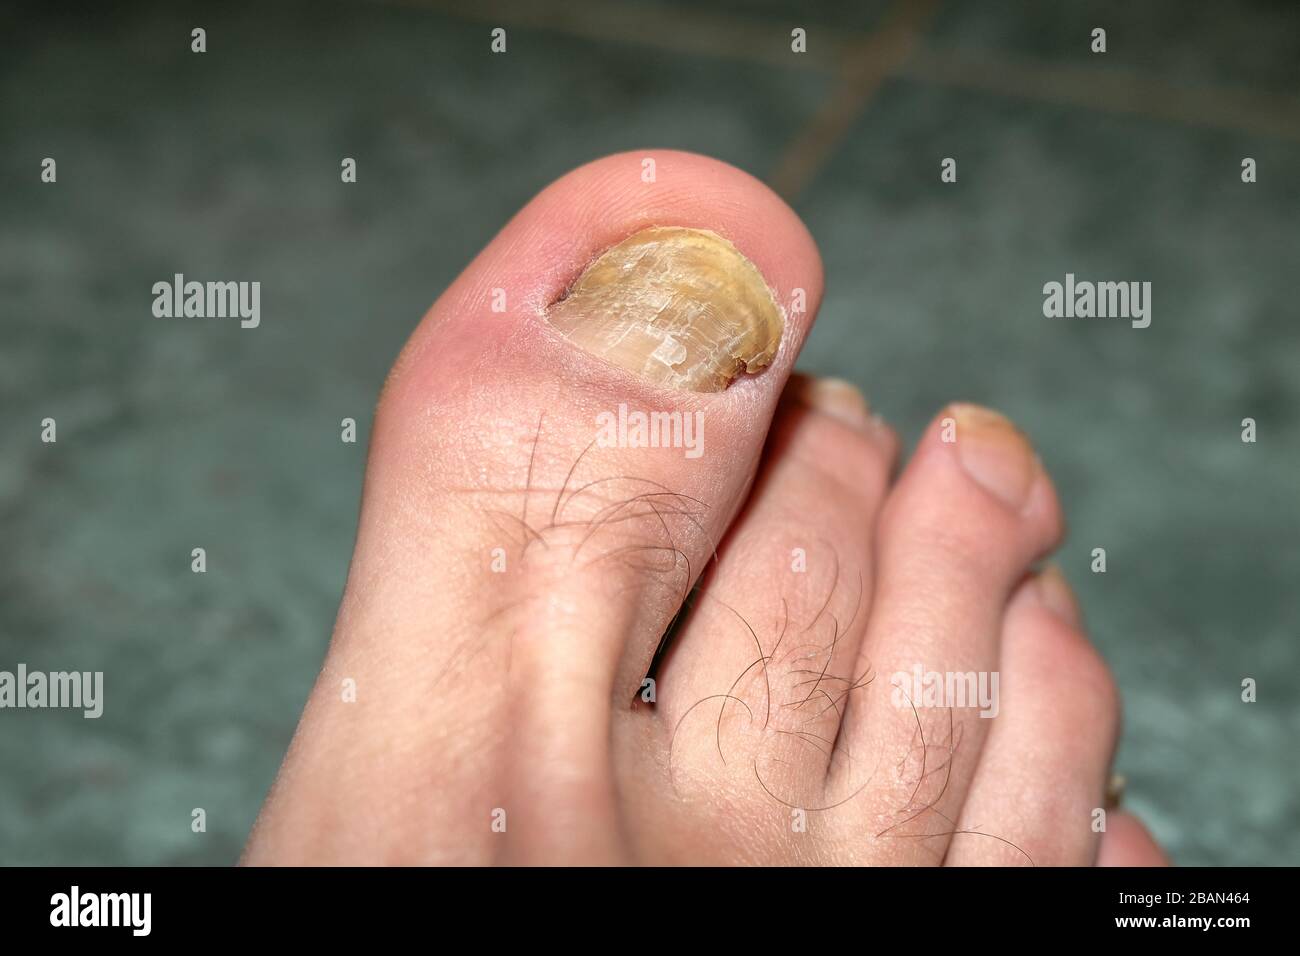 Dedos humanos con uñas enfermas de micosis onycho, salud dermatológica, médica Foto de stock